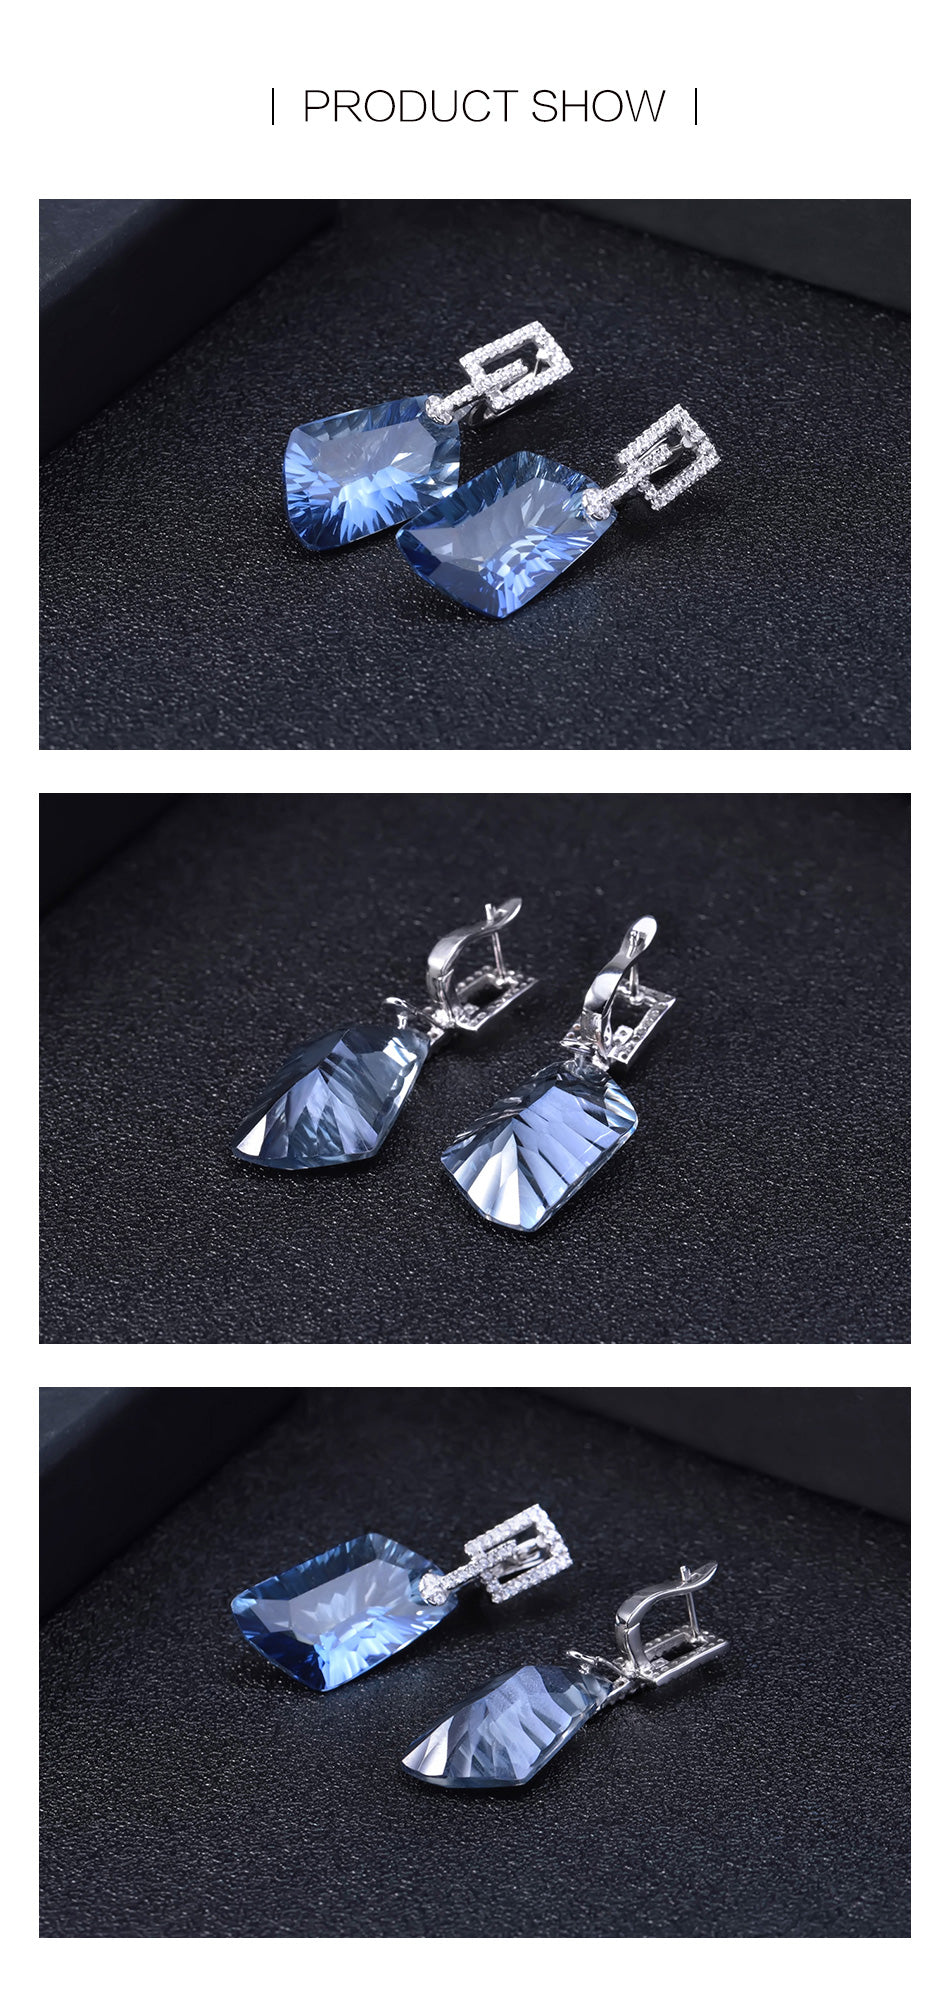 مجموعة من الكوارتز الصوفي الأزرق الطبيعي المقاوم للتشويه من الفضة الإسترليني عيار 925 وأقراط وخاتم ومجوهرات راقية